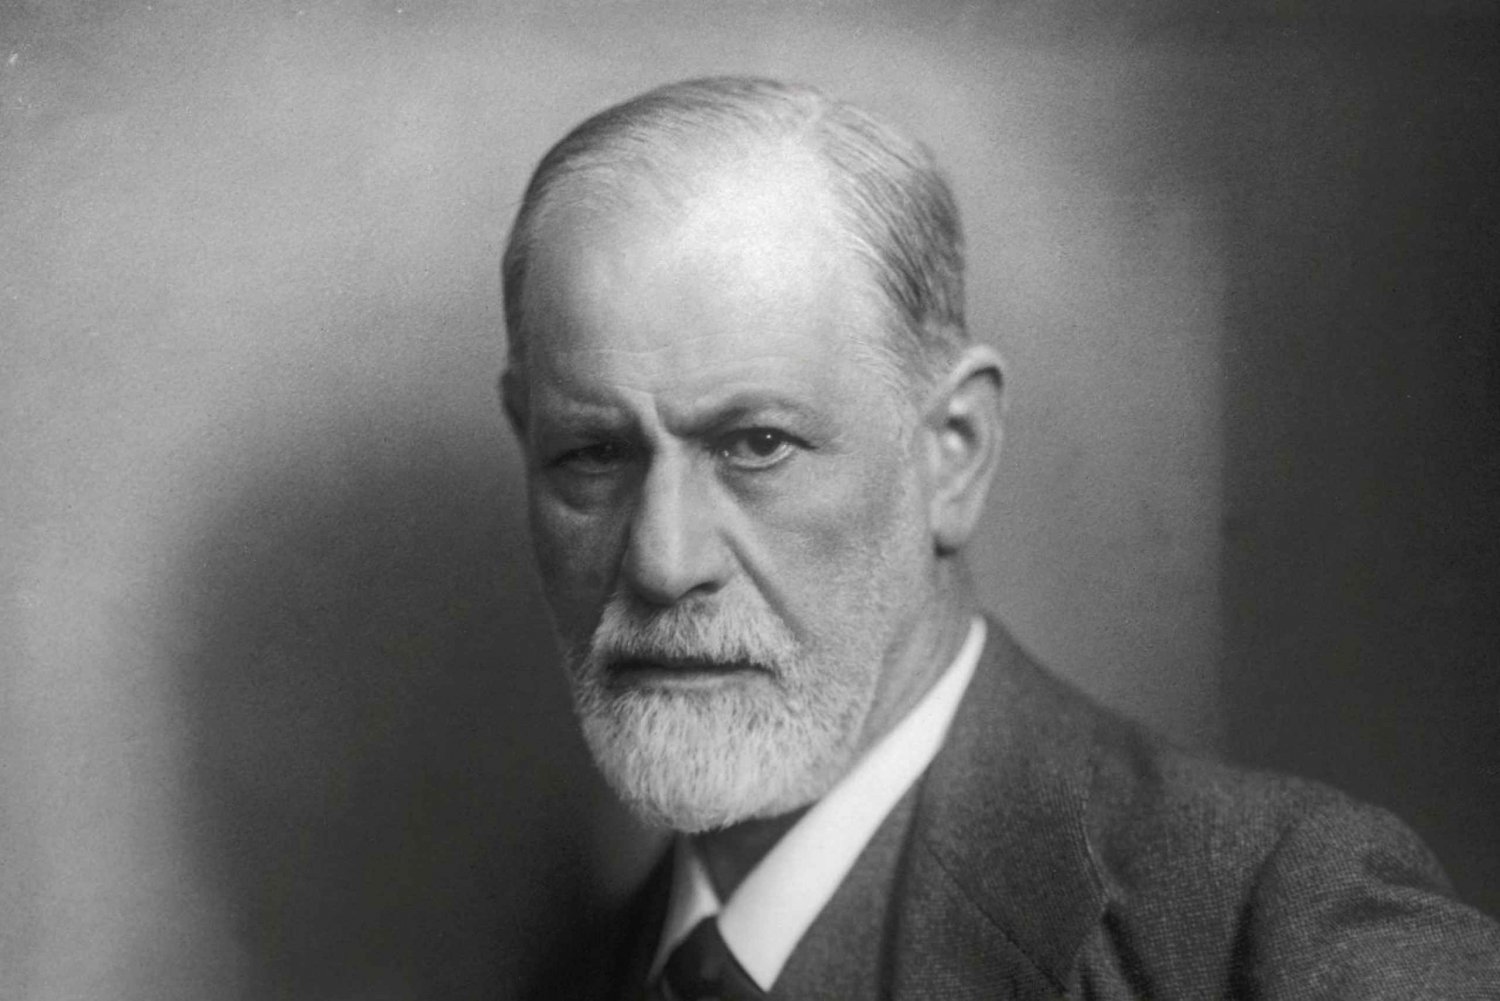 Wien: Biljett till Sigmund Freud Museum